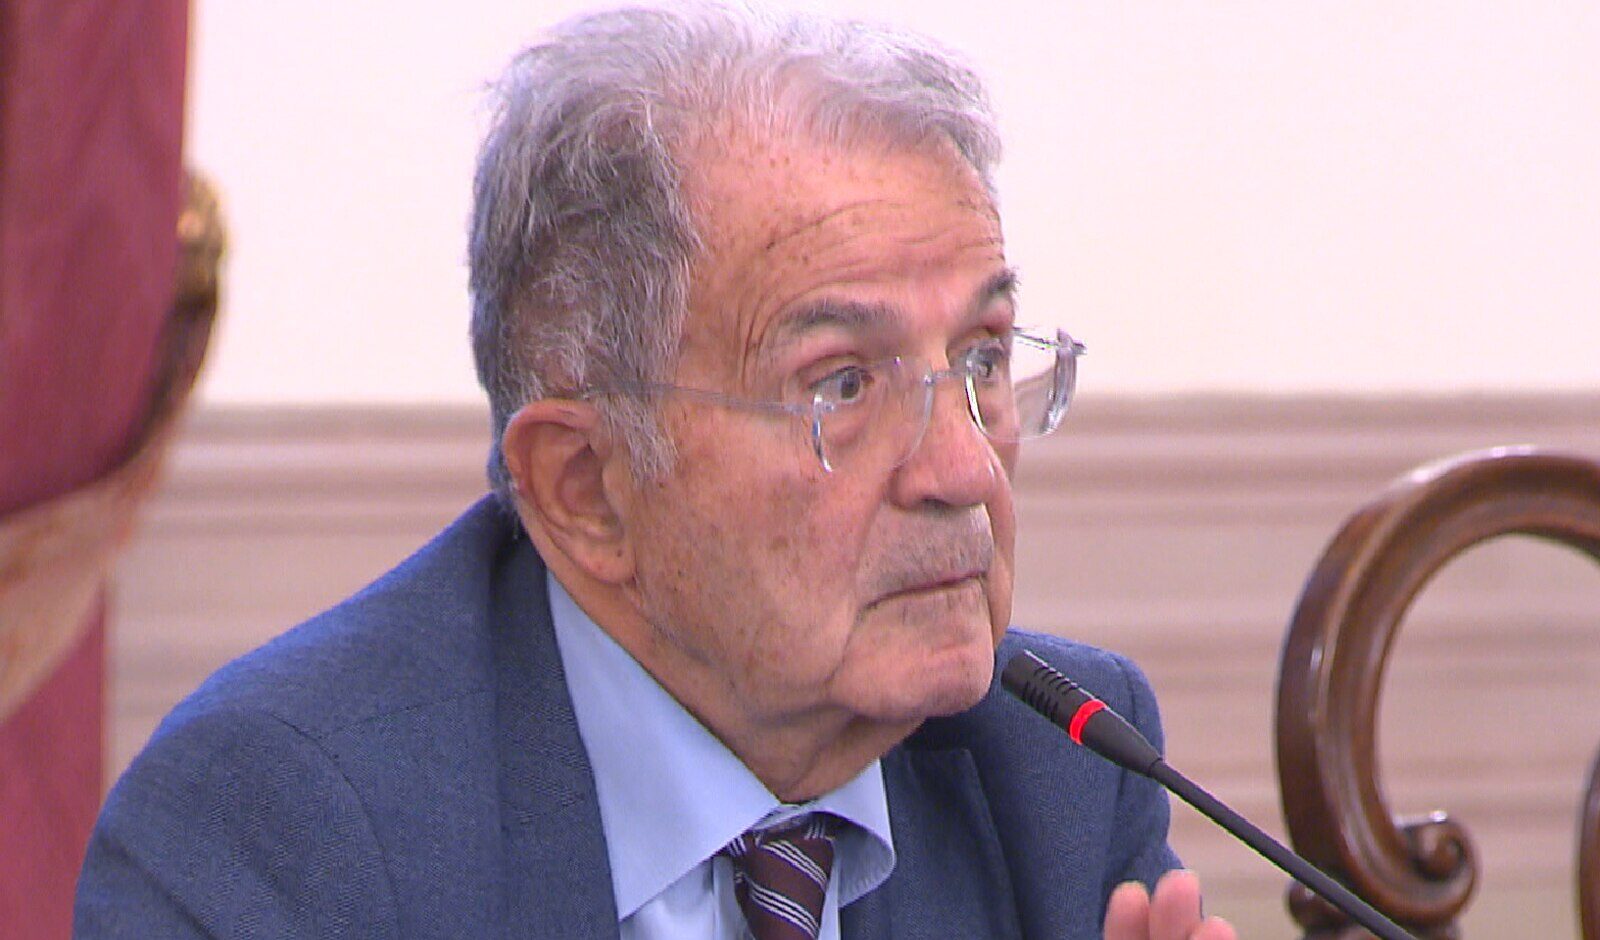 Prodi sul centro-sinistra: "Se si vuole vincere bisogna federare, se si vuole perdere no"